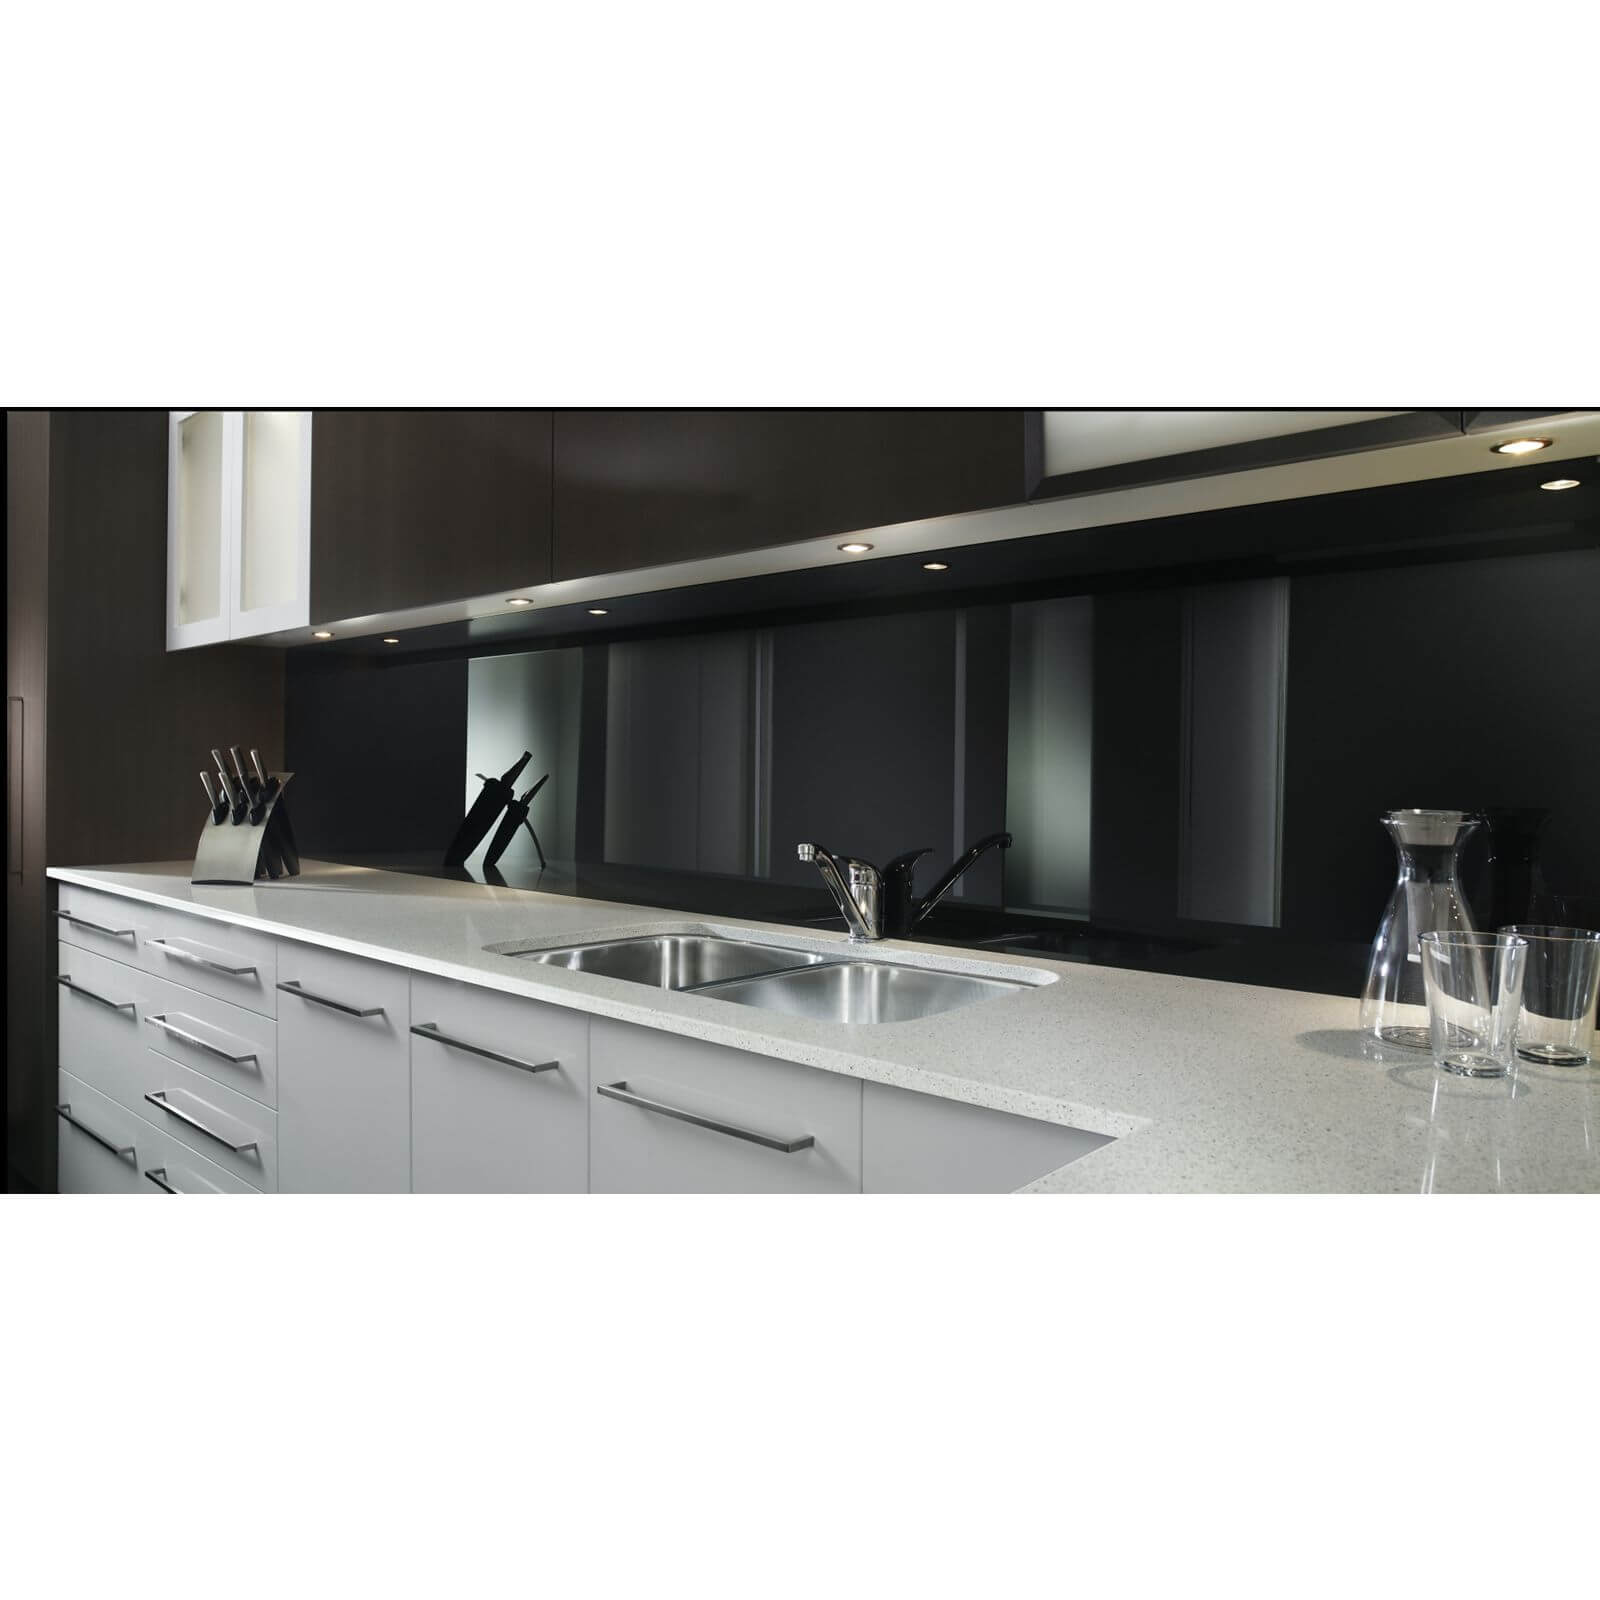 Zenolite Acrylic Kitchen Splashback Panel - 760 x 700mm - Black